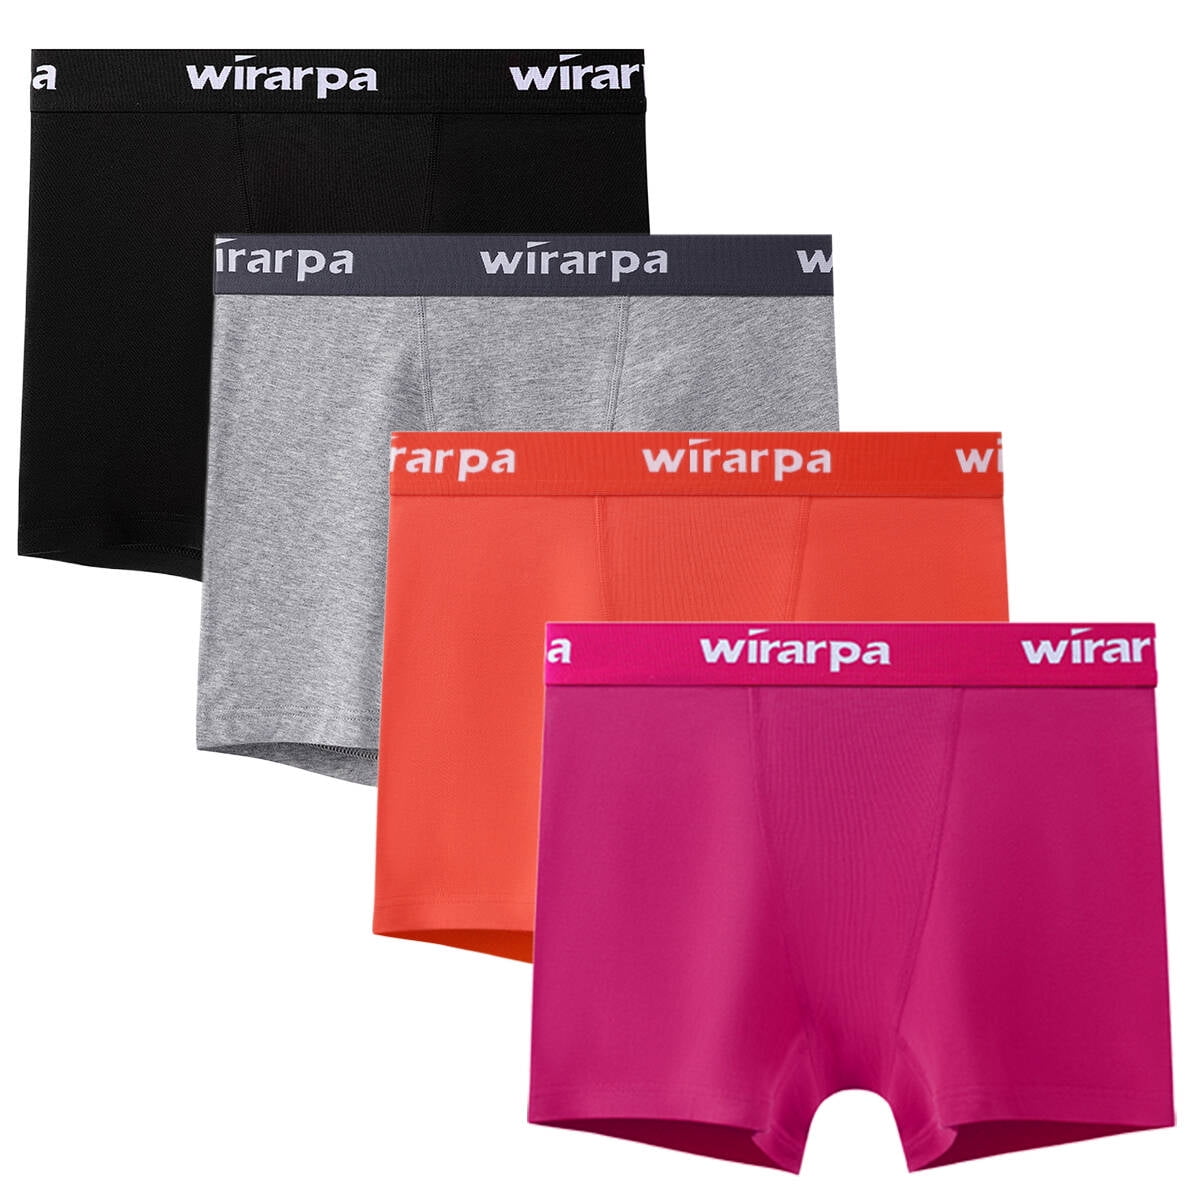 Wirarpa wirarpa Women's Cotton Boxer Briefs Underwear Anti Chafe